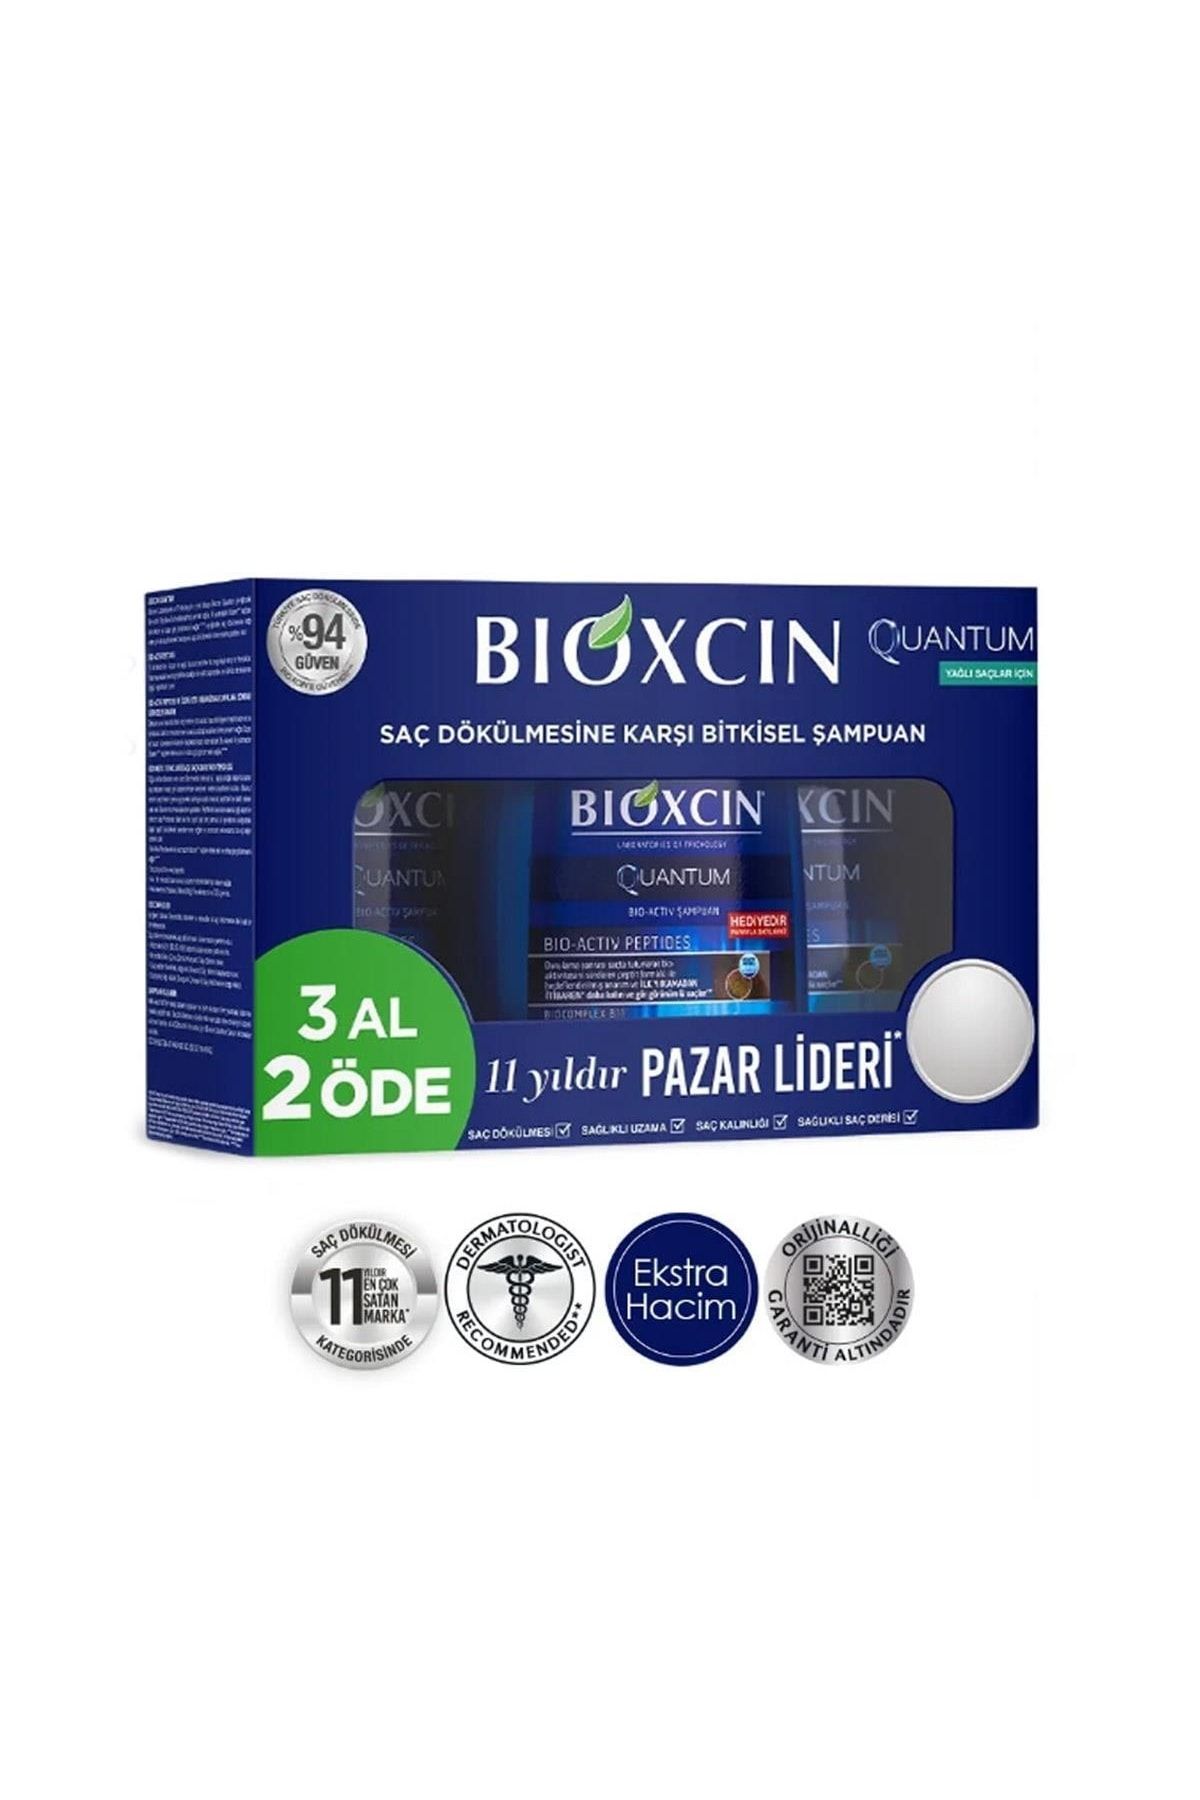 Bioxcin Quantum Şampuan 3 Al 2 Öde Yağlı Saçlar Için 3x300 Ml -vb809